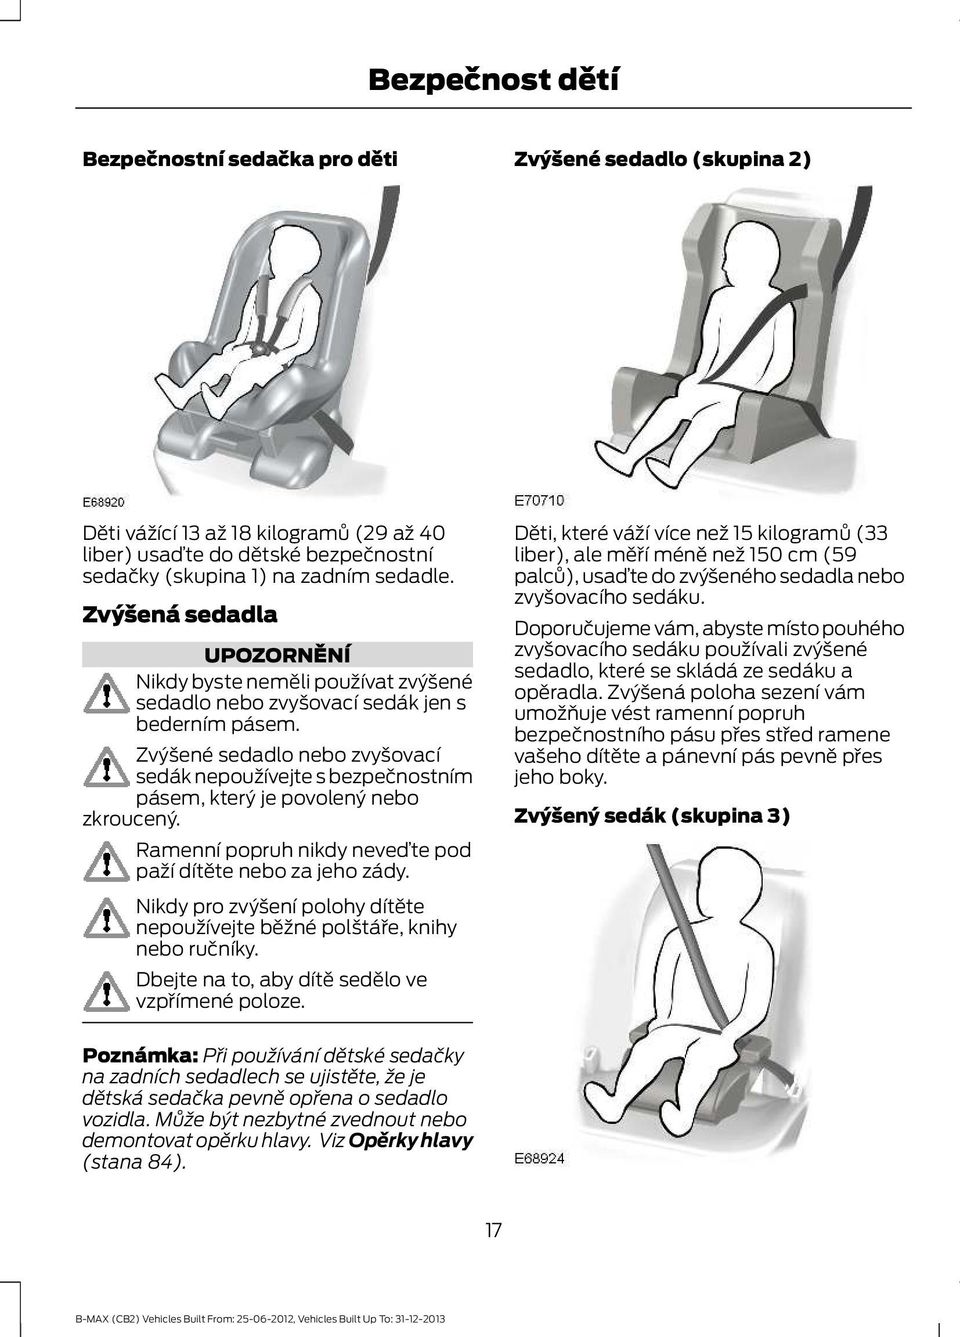 Zvýšené sedadlo nebo zvyšovací sedák nepoužívejte s bezpečnostním pásem, který je povolený nebo zkroucený. Ramenní popruh nikdy neveďte pod paží dítěte nebo za jeho zády.